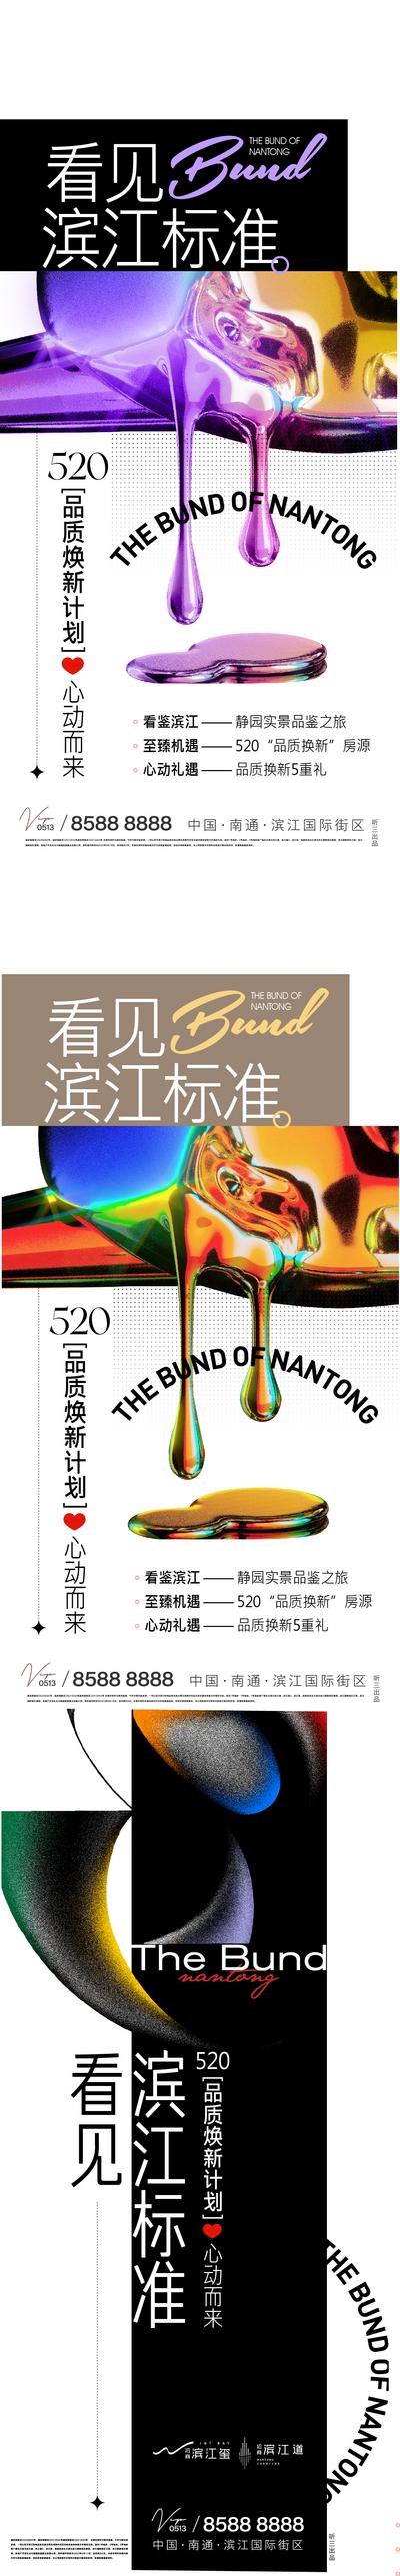 南门网 海报 房地产 价值点 大都会 滨江 彩色 质感  抽象 艺术 系列